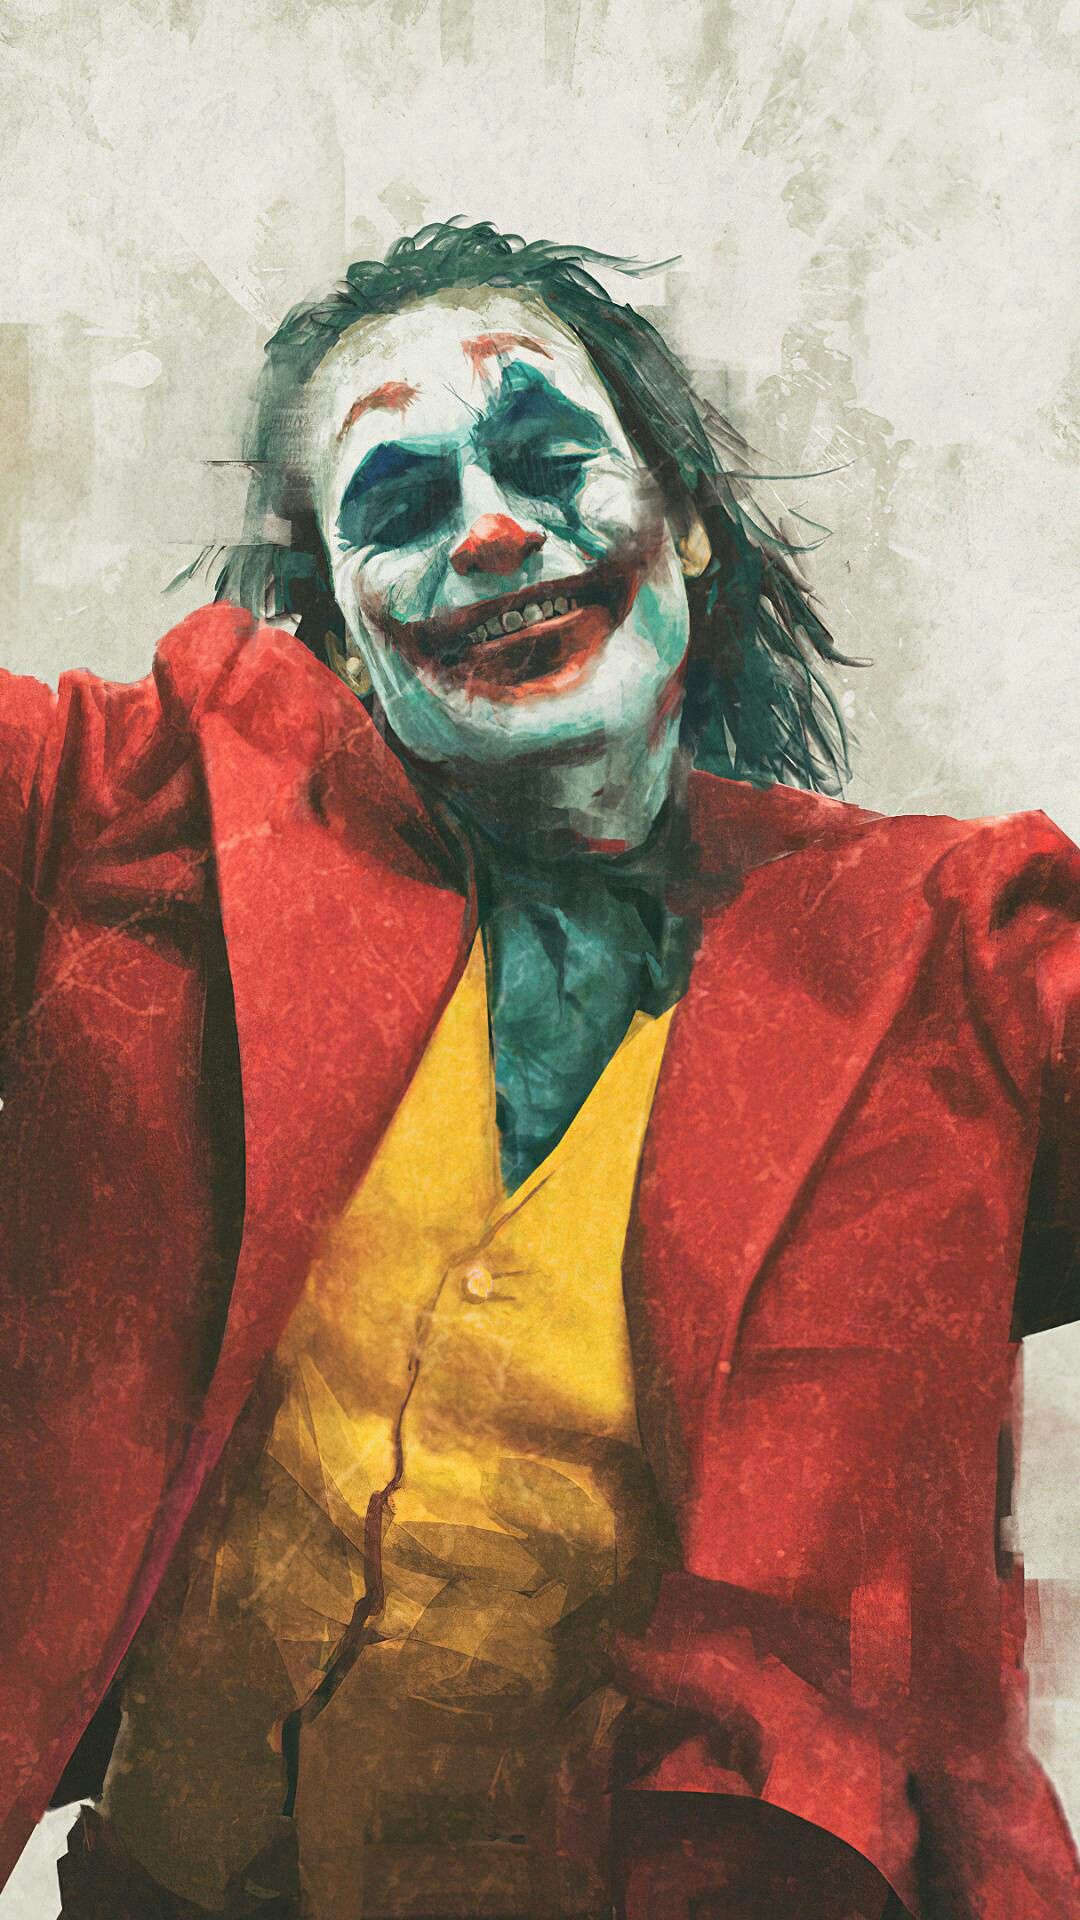 Hình ảnh Joker và nỗi buồn